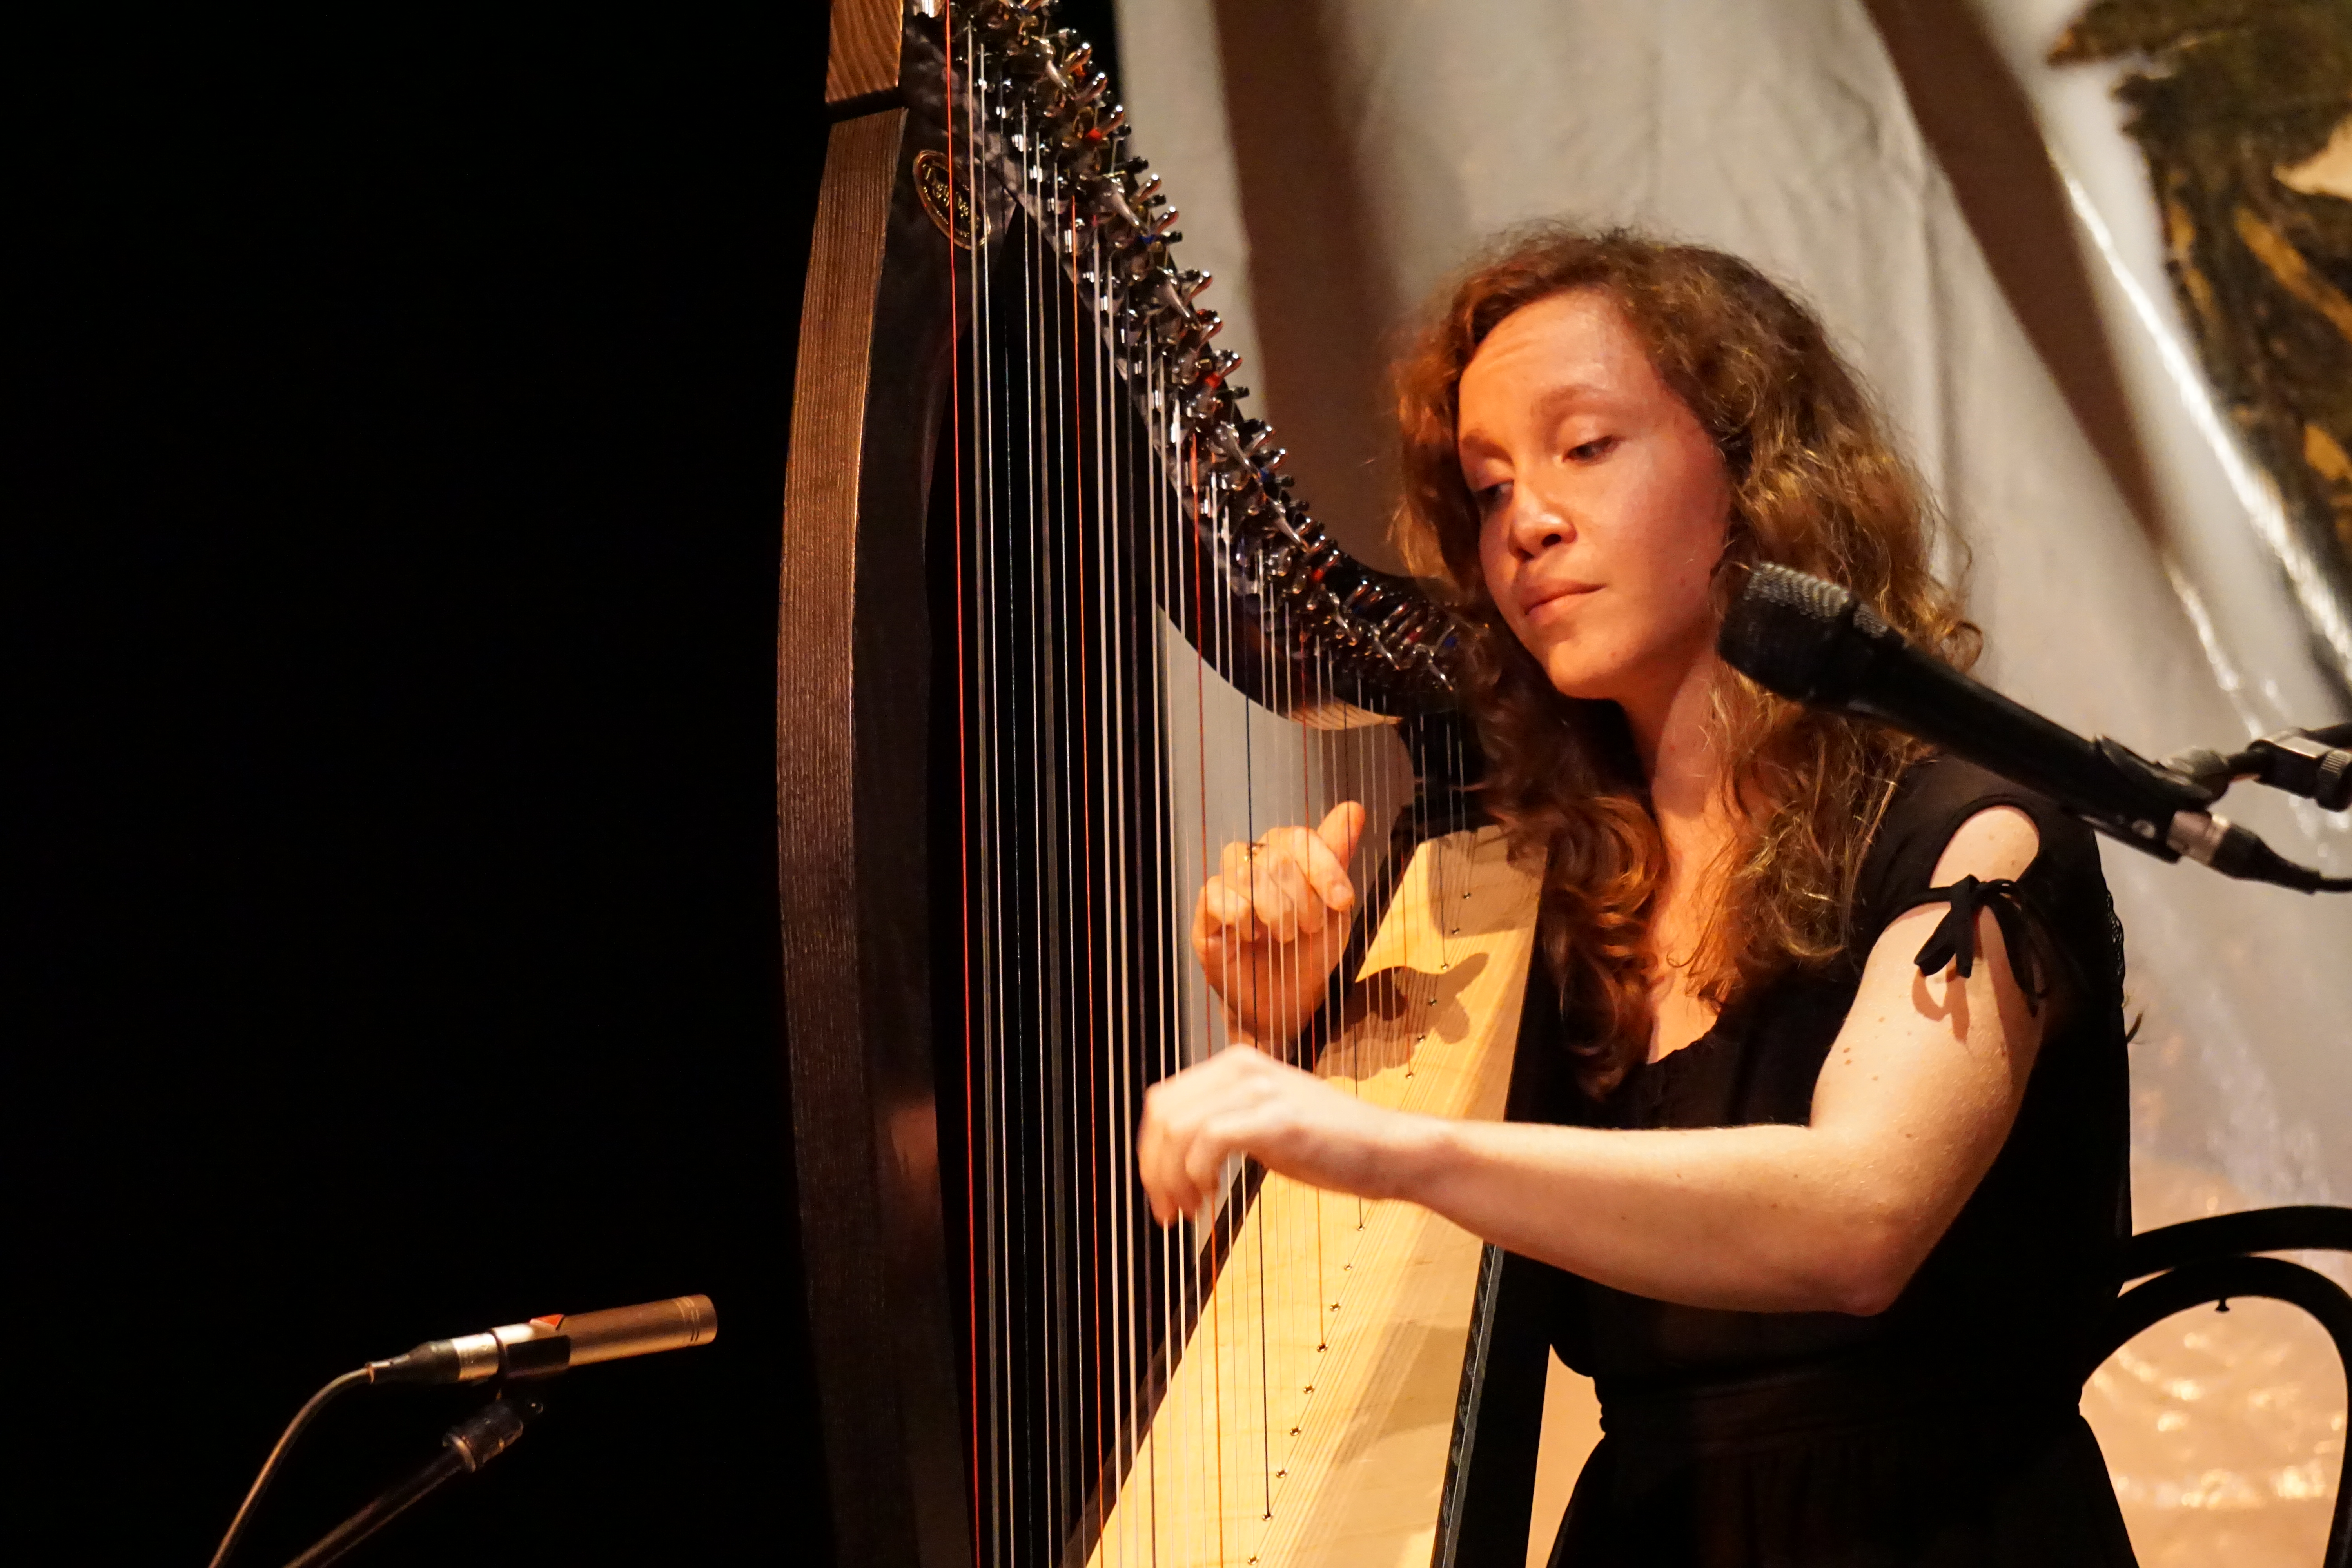 Harp playing